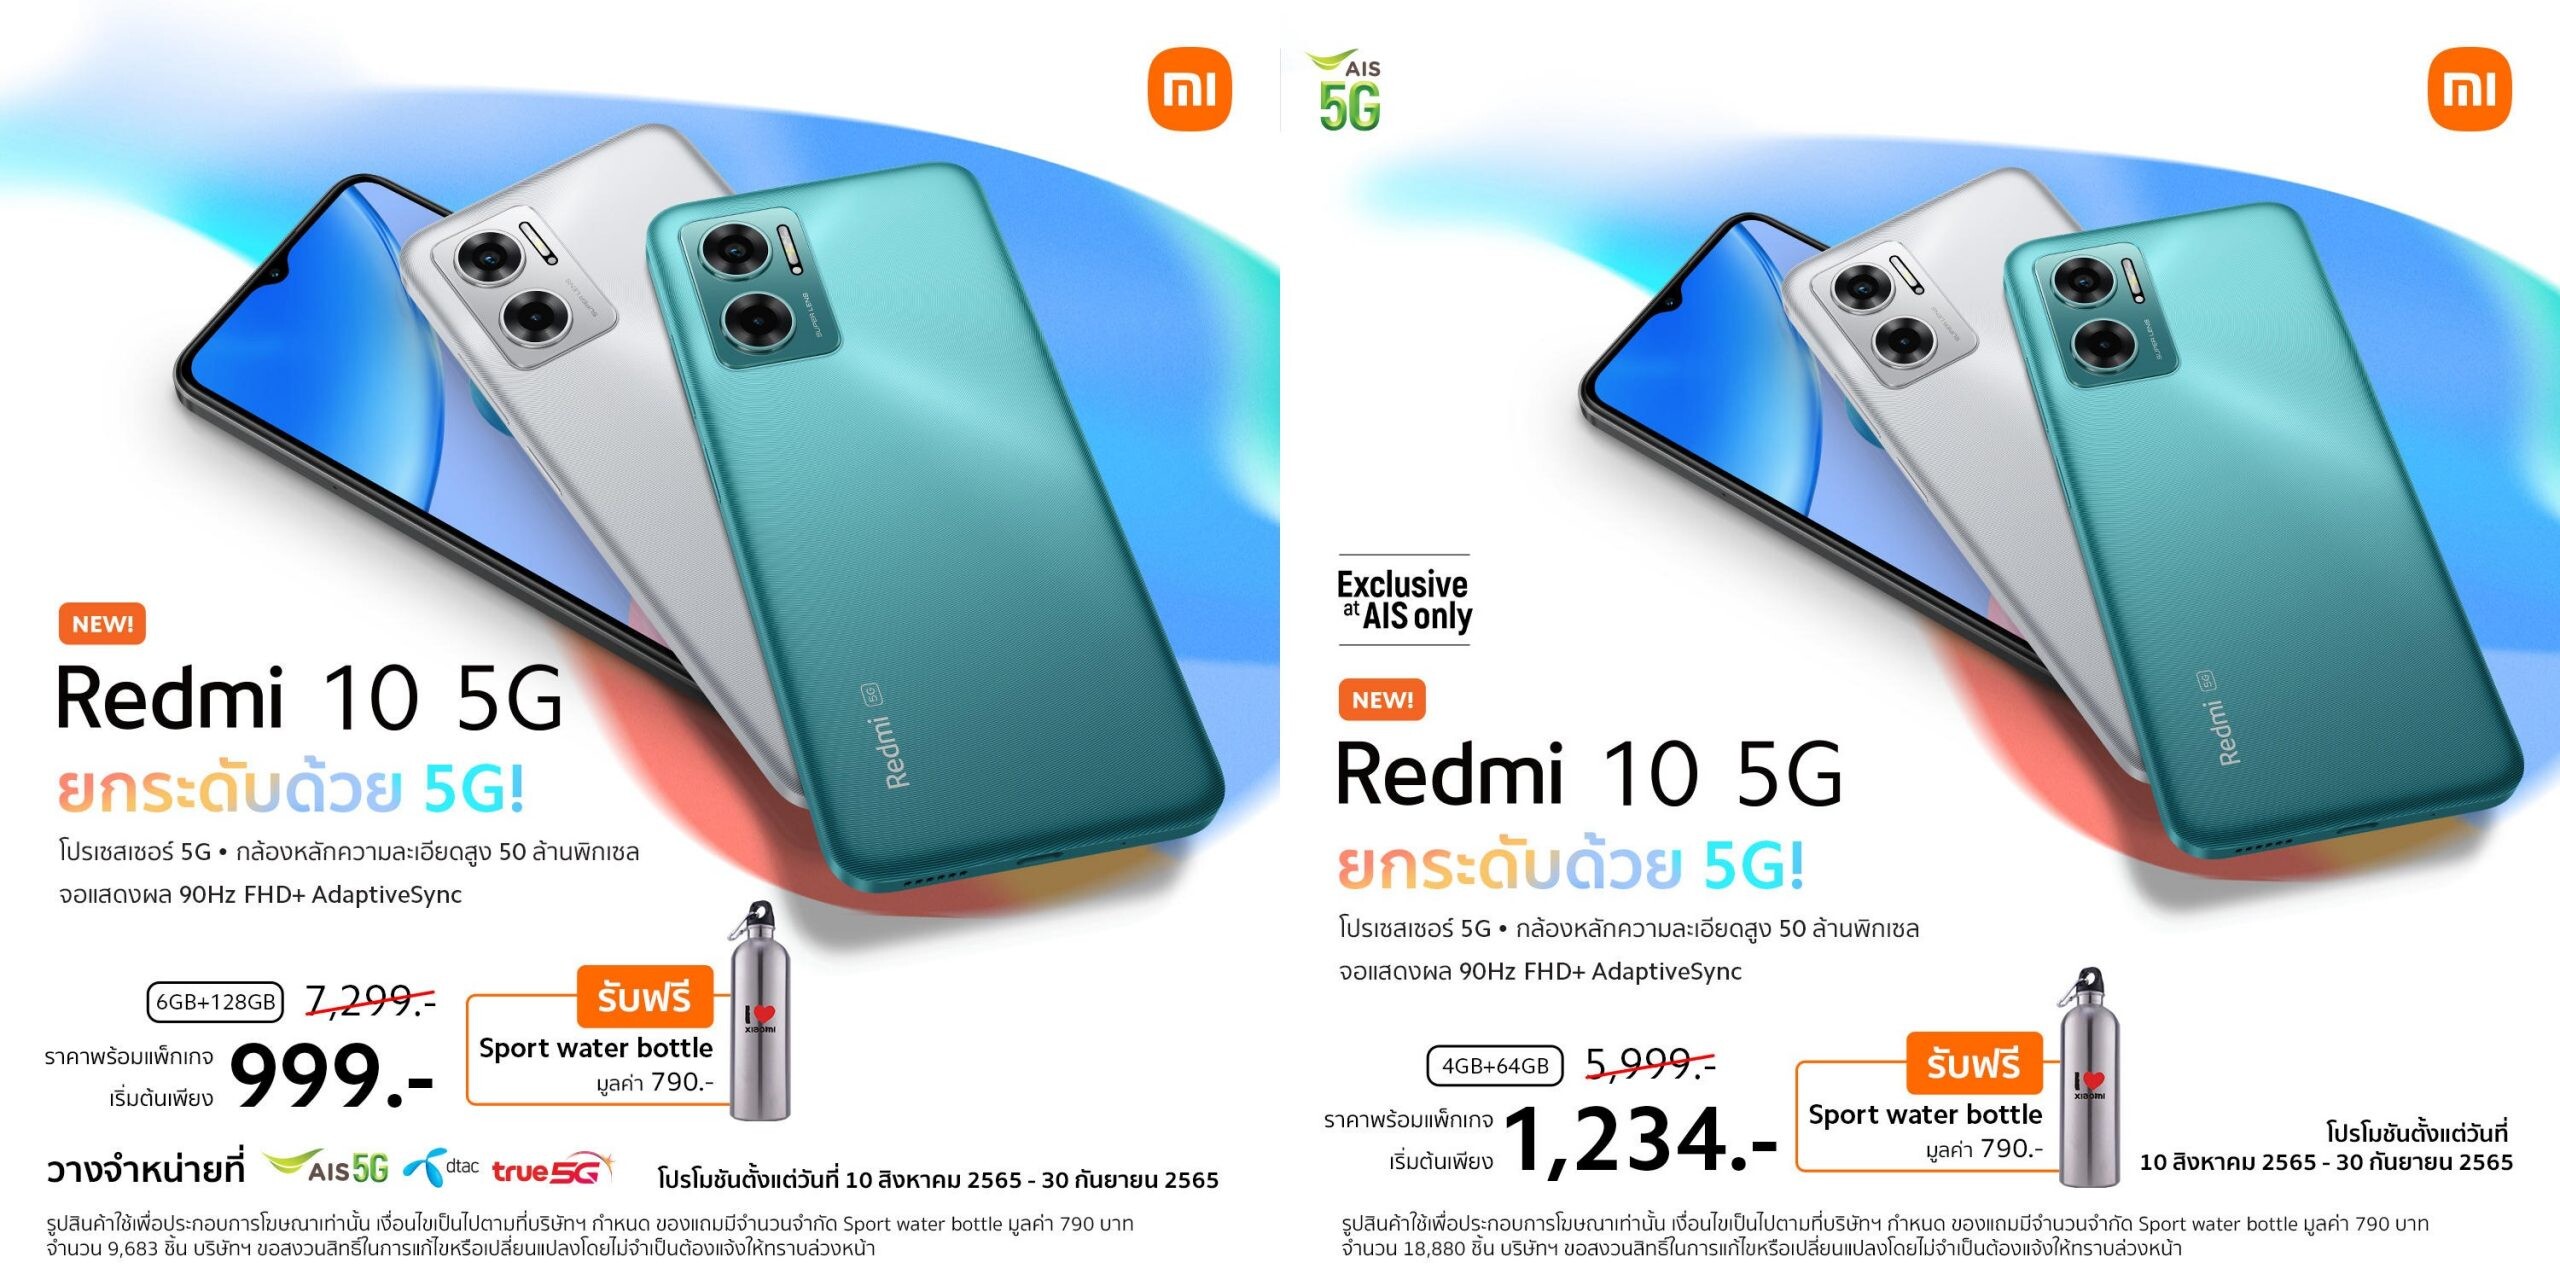 เสียวหมี่จับมือผู้ให้บริการเครือข่ายวางจำหน่าย Redmi 10 5G สมาร์ทโฟน 5G สุดคุ้ม ในราคาเริ่มต้นเพียง 999 บาท